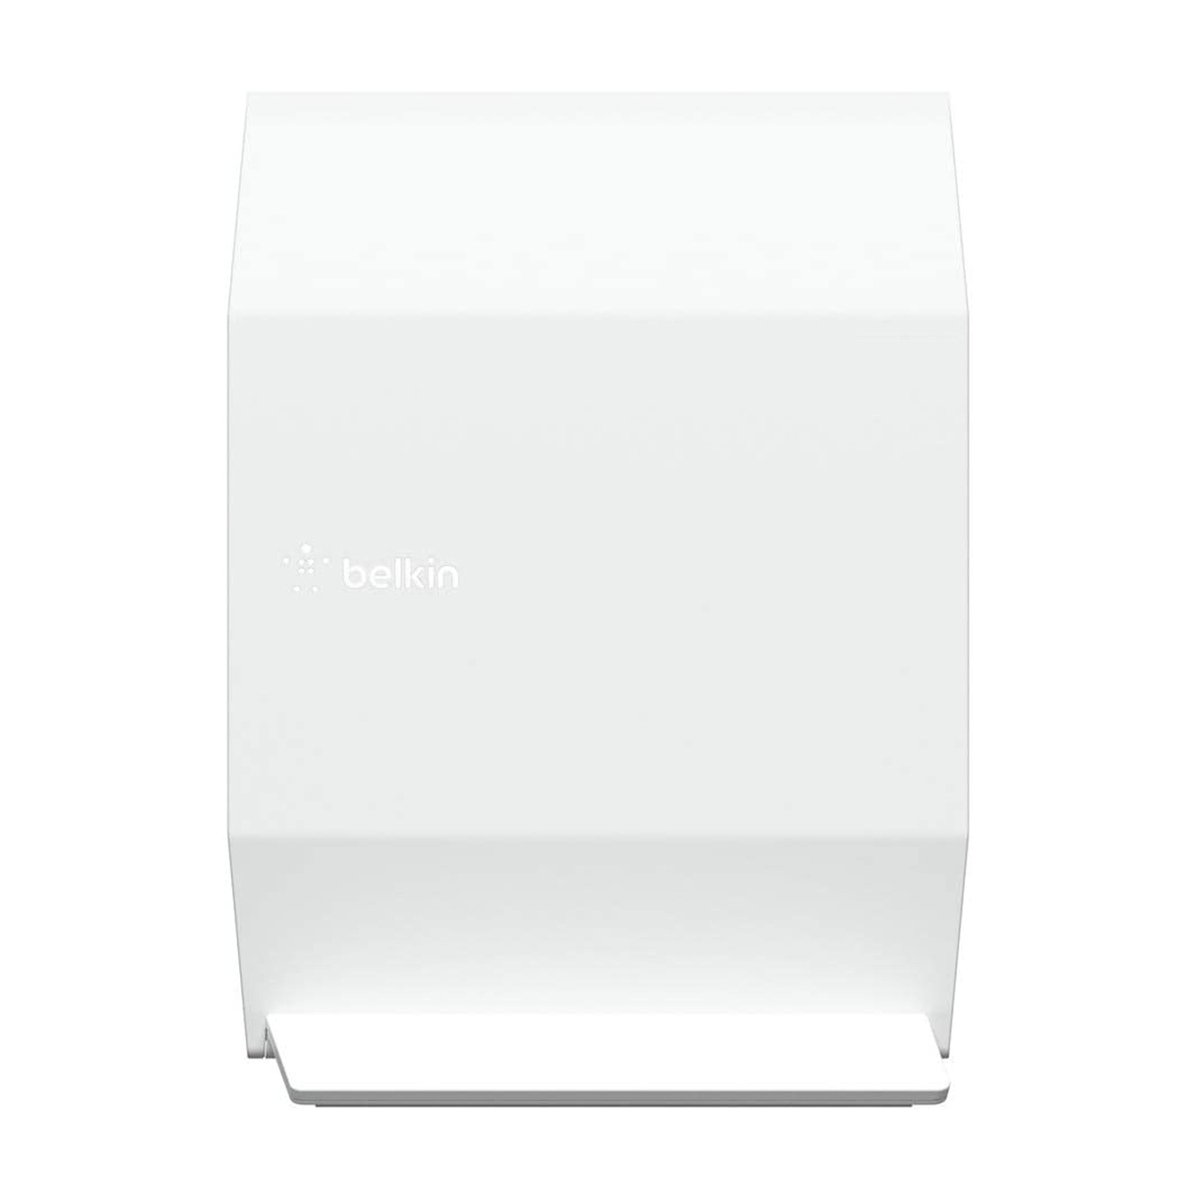 Belkin Wifi-6 Router RT3200